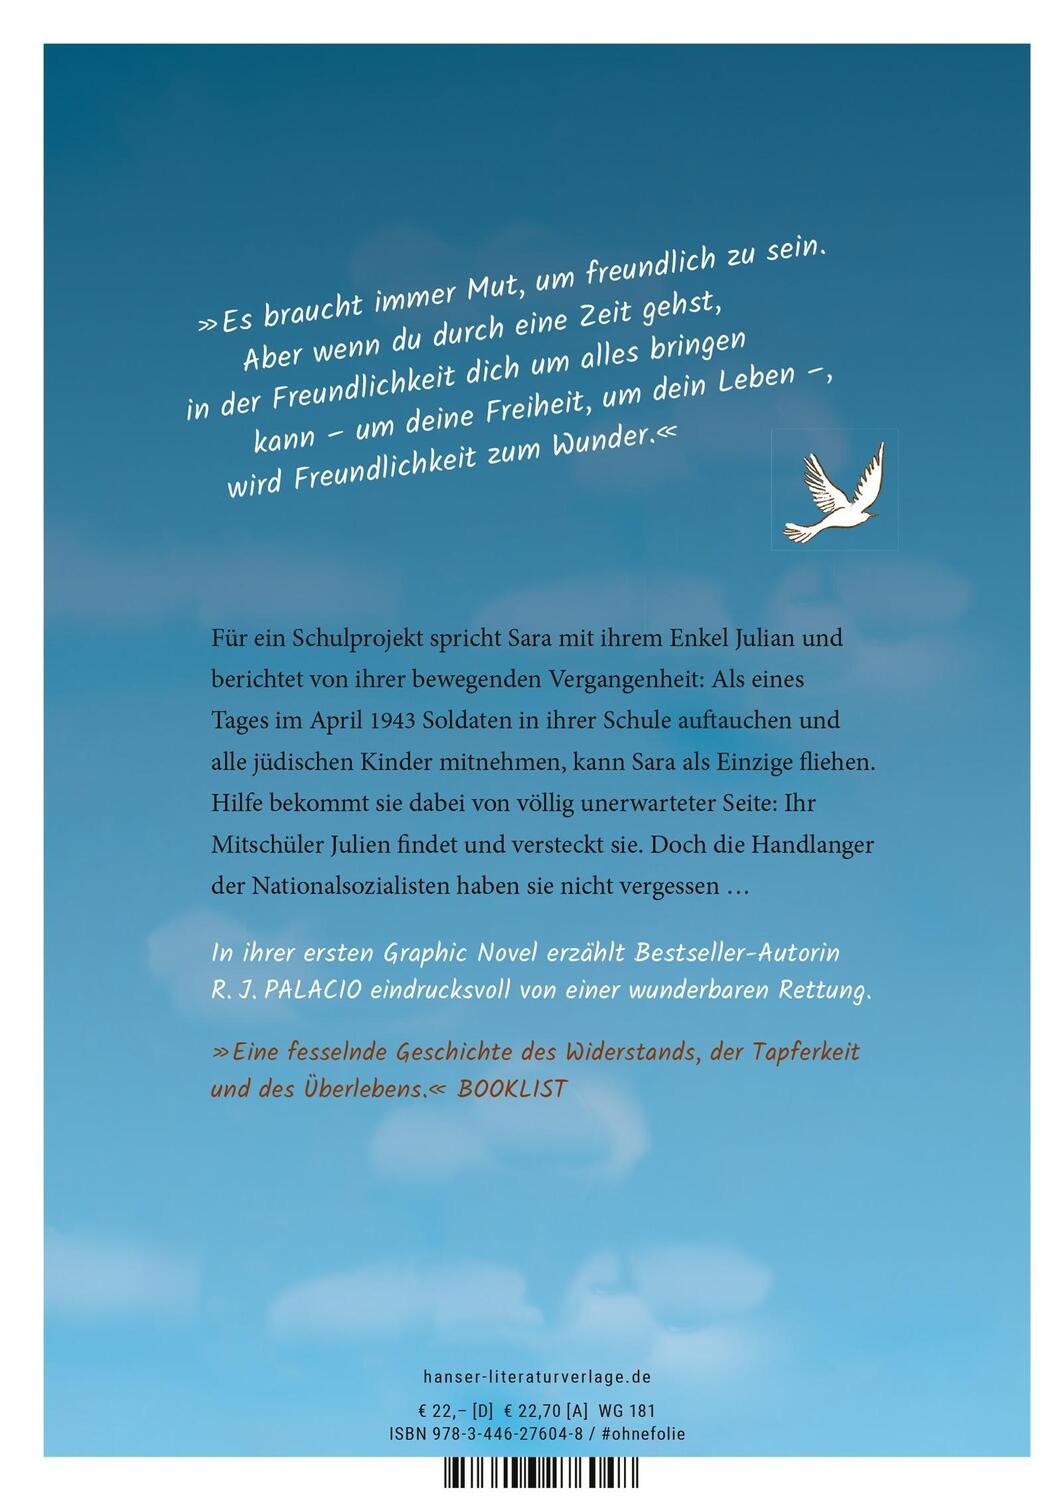 Bild: 9783446276048 | White Bird - Wie ein Vogel (Graphic Novel) | R.J. Palacio | Buch